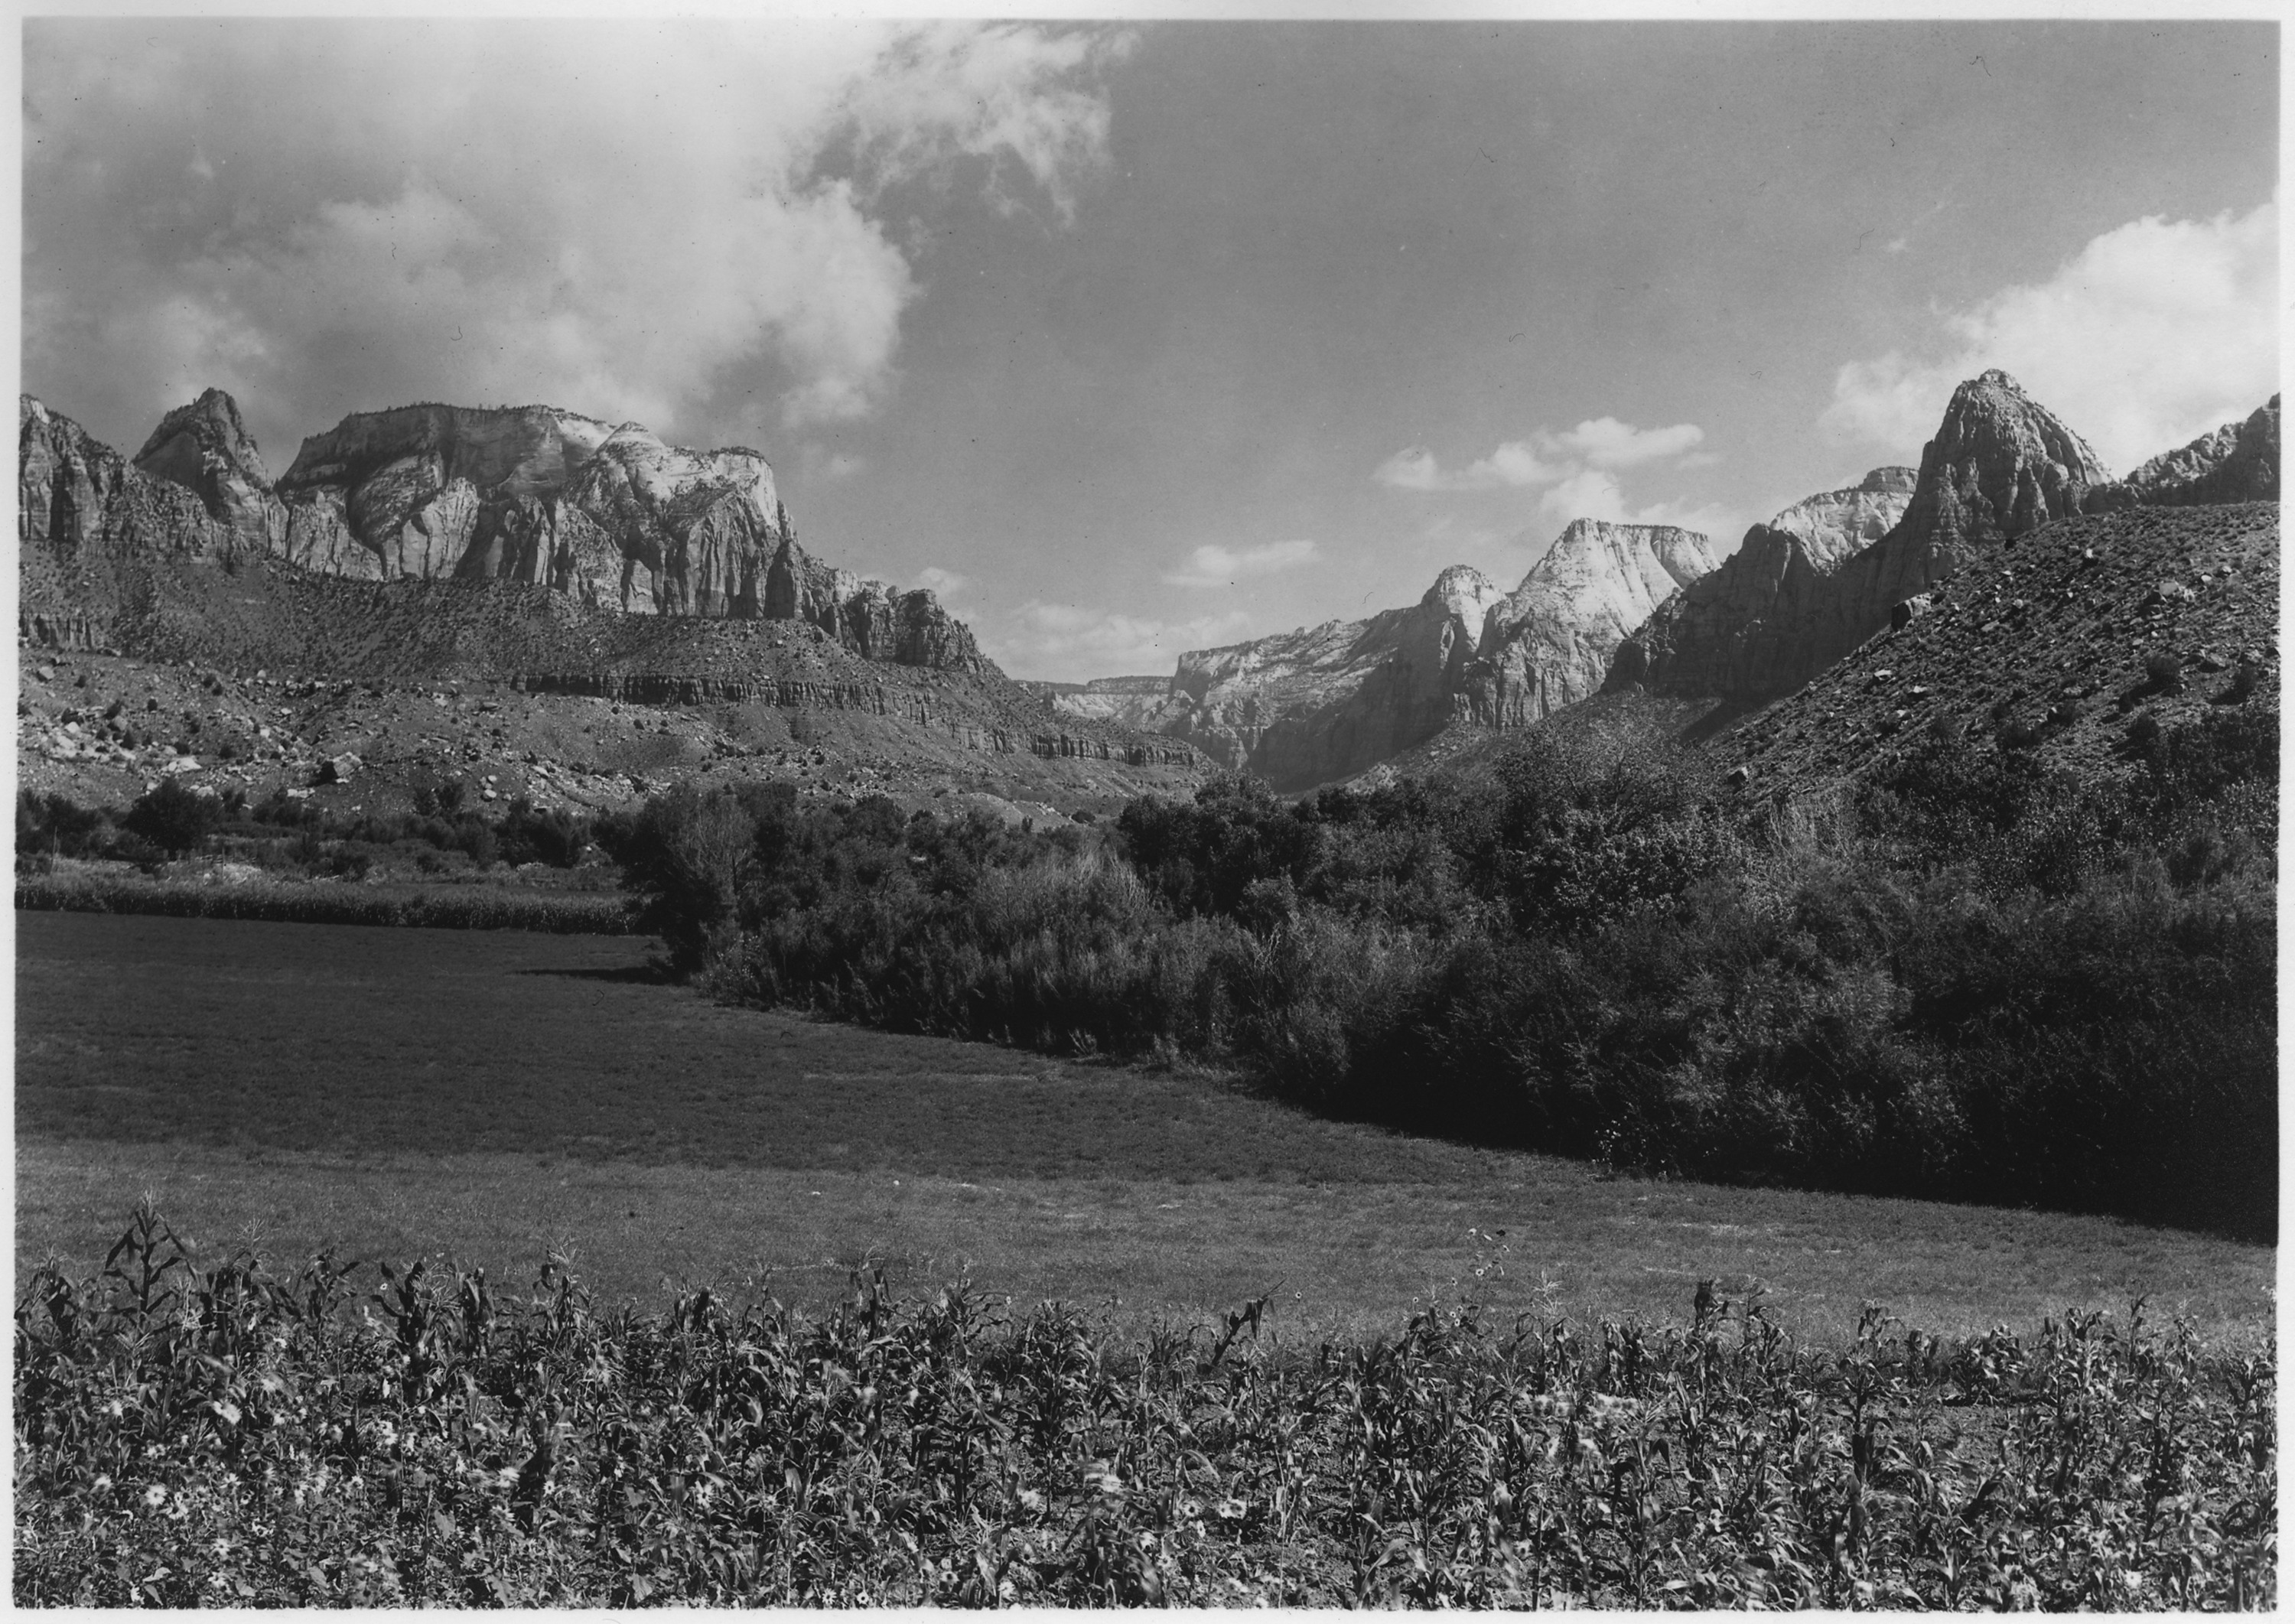 Entrance to Zion Canyon below Springdale, Utah, showing both sides. - NARA - 520358